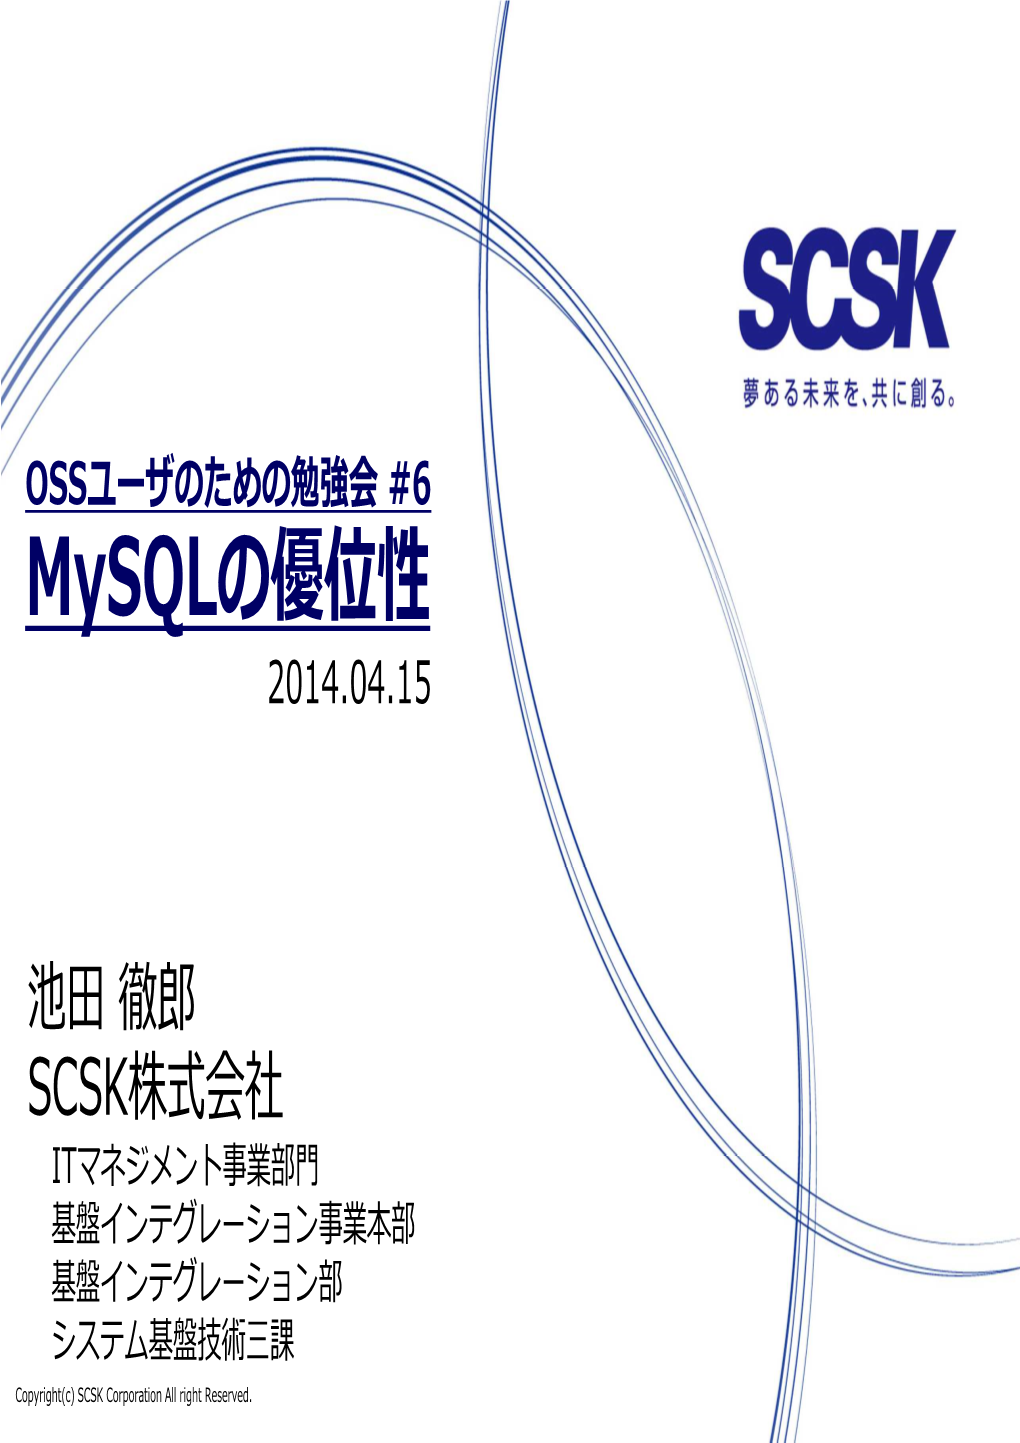 OSSユーザのための勉強会 #6 Mysqlの優位性 2014.04.15